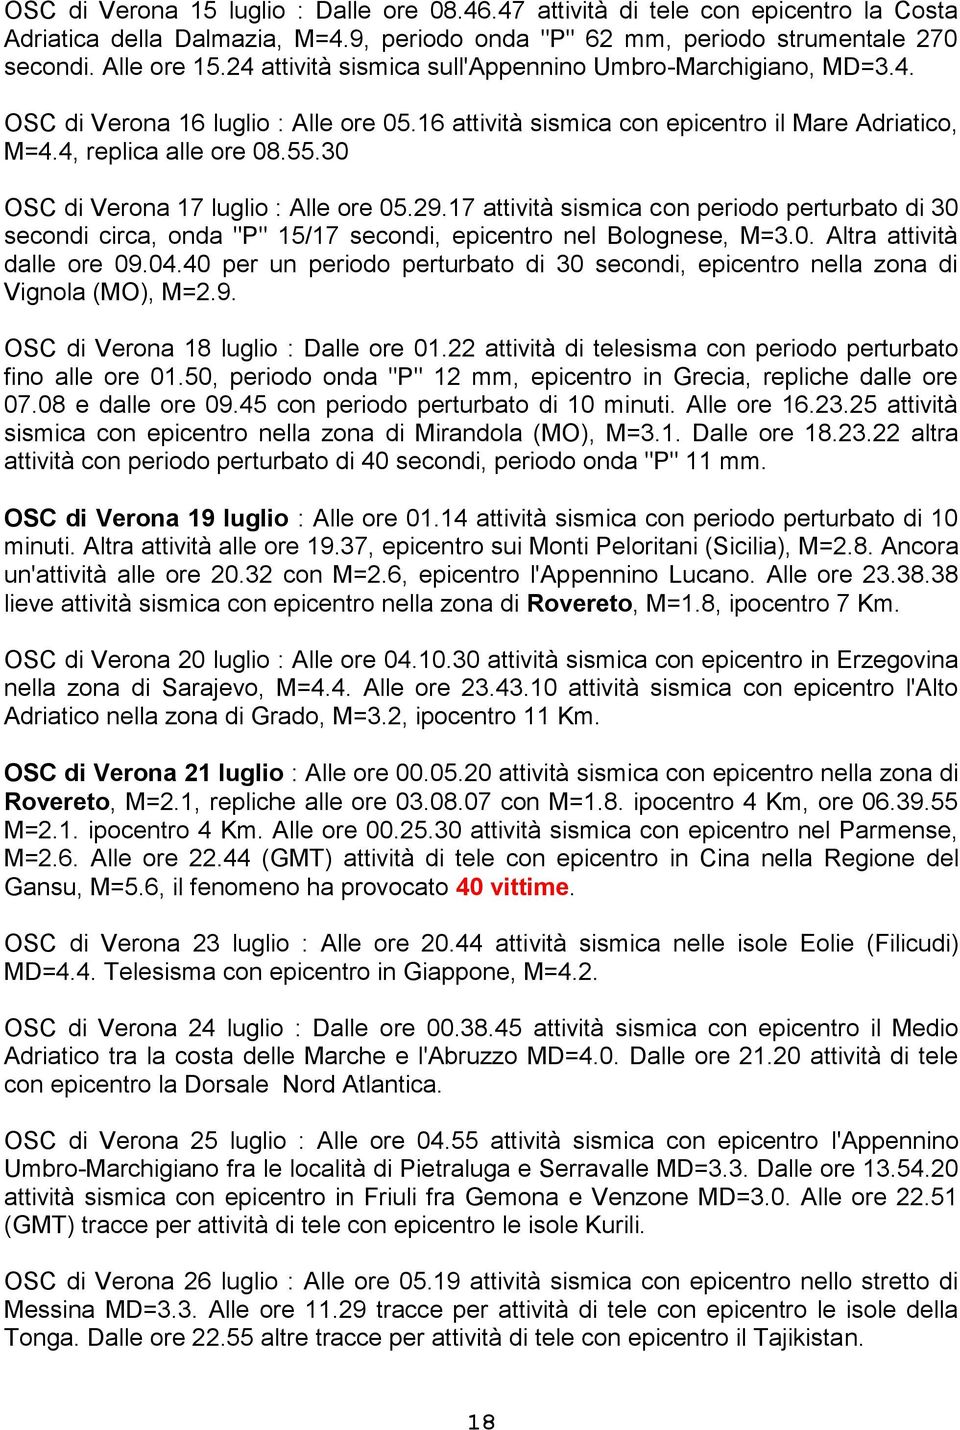 30 OSC di Verona 17 luglio : Alle ore 05.29.17 attività sismica con periodo perturbato di 30 secondi circa, onda "P" 15/17 secondi, epicentro nel Bolognese, M=3.0. Altra attività dalle ore 09.04.